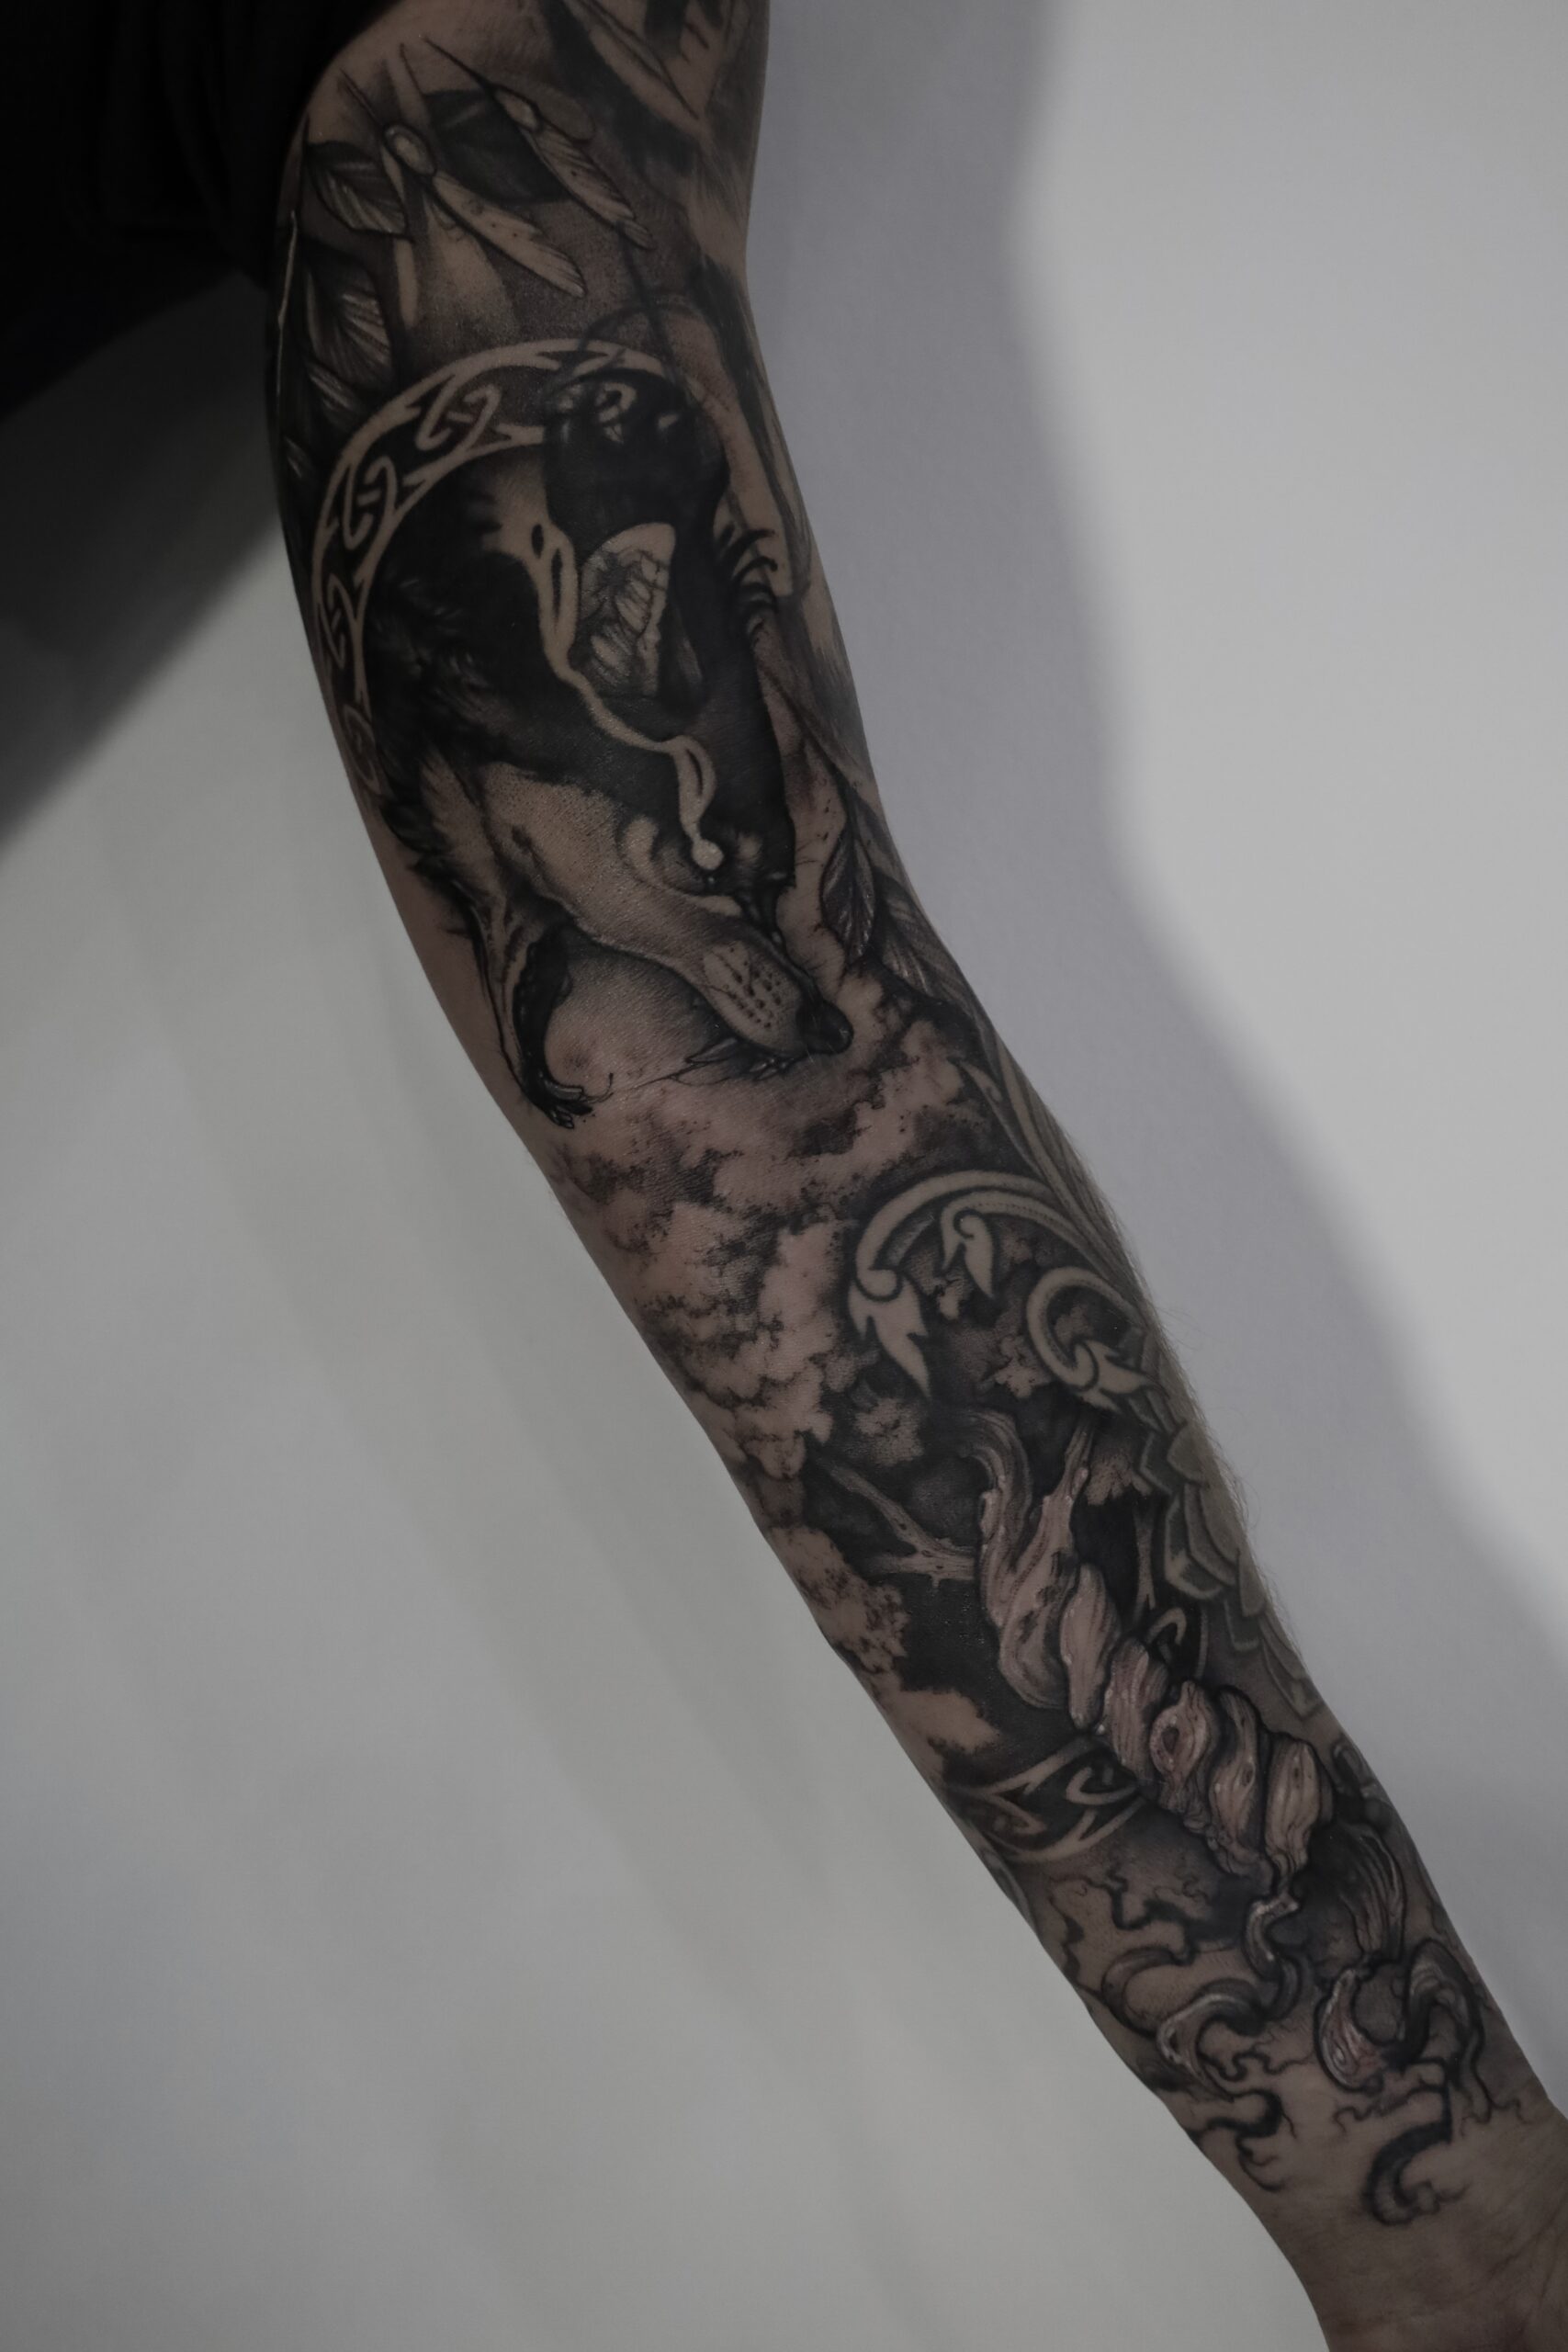 White Rat Tattoo studio tatuażu Warszawa Foxey tatuaż nordycki wilk Foxey